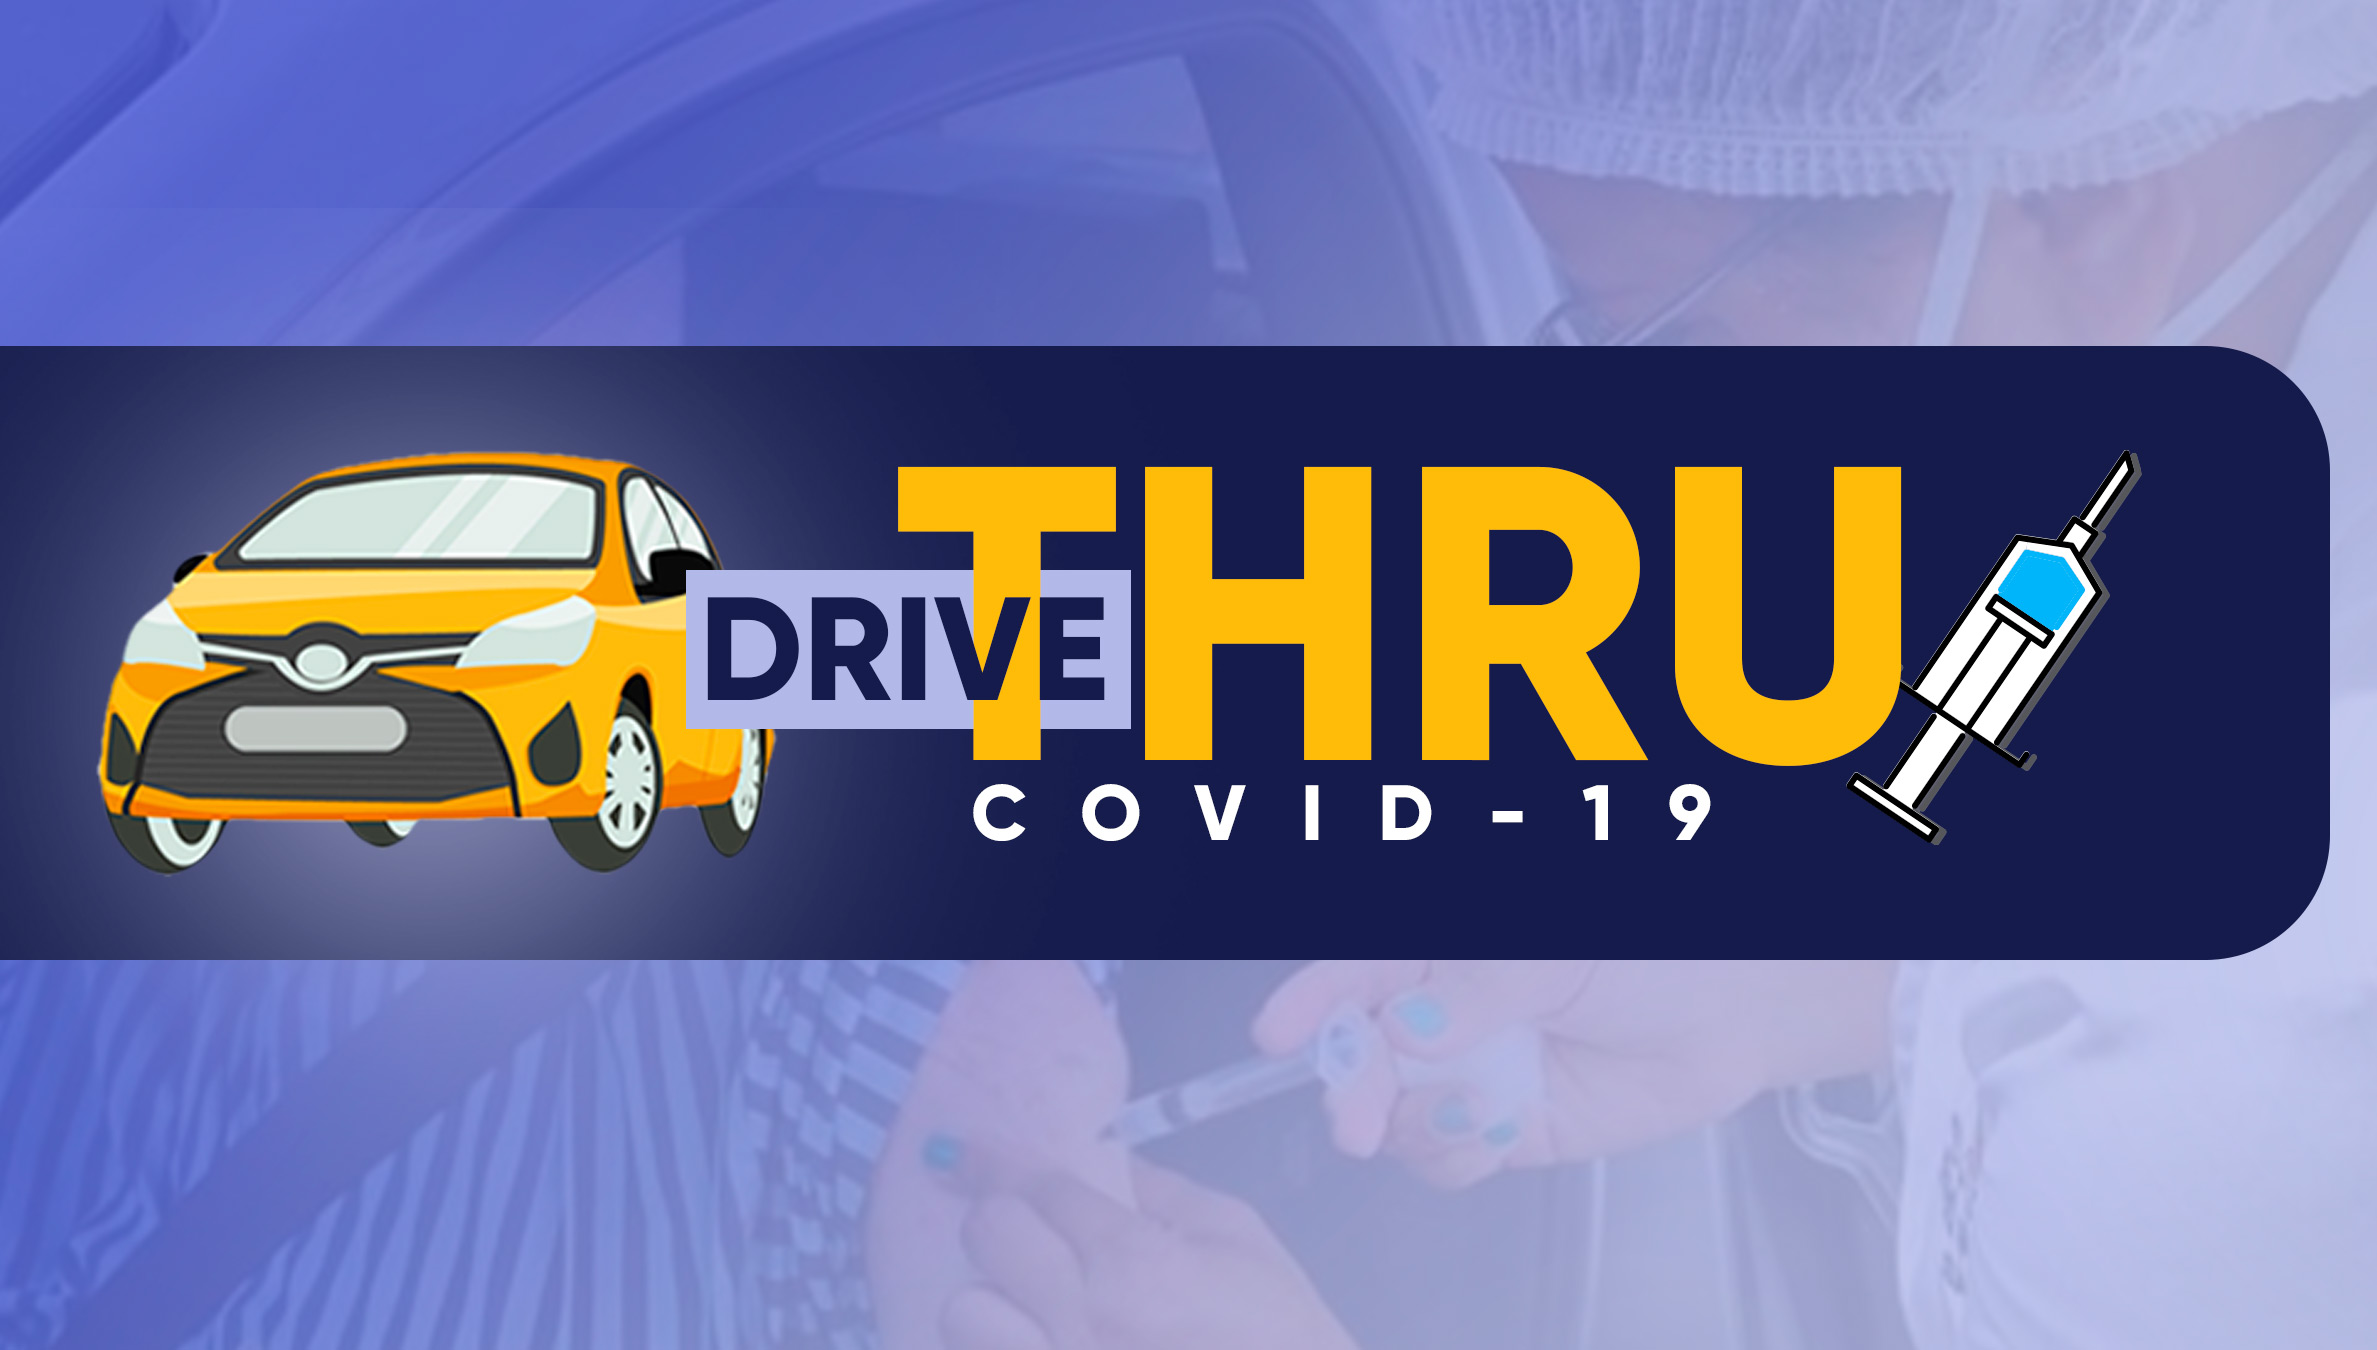 Drive Thru COVID-19